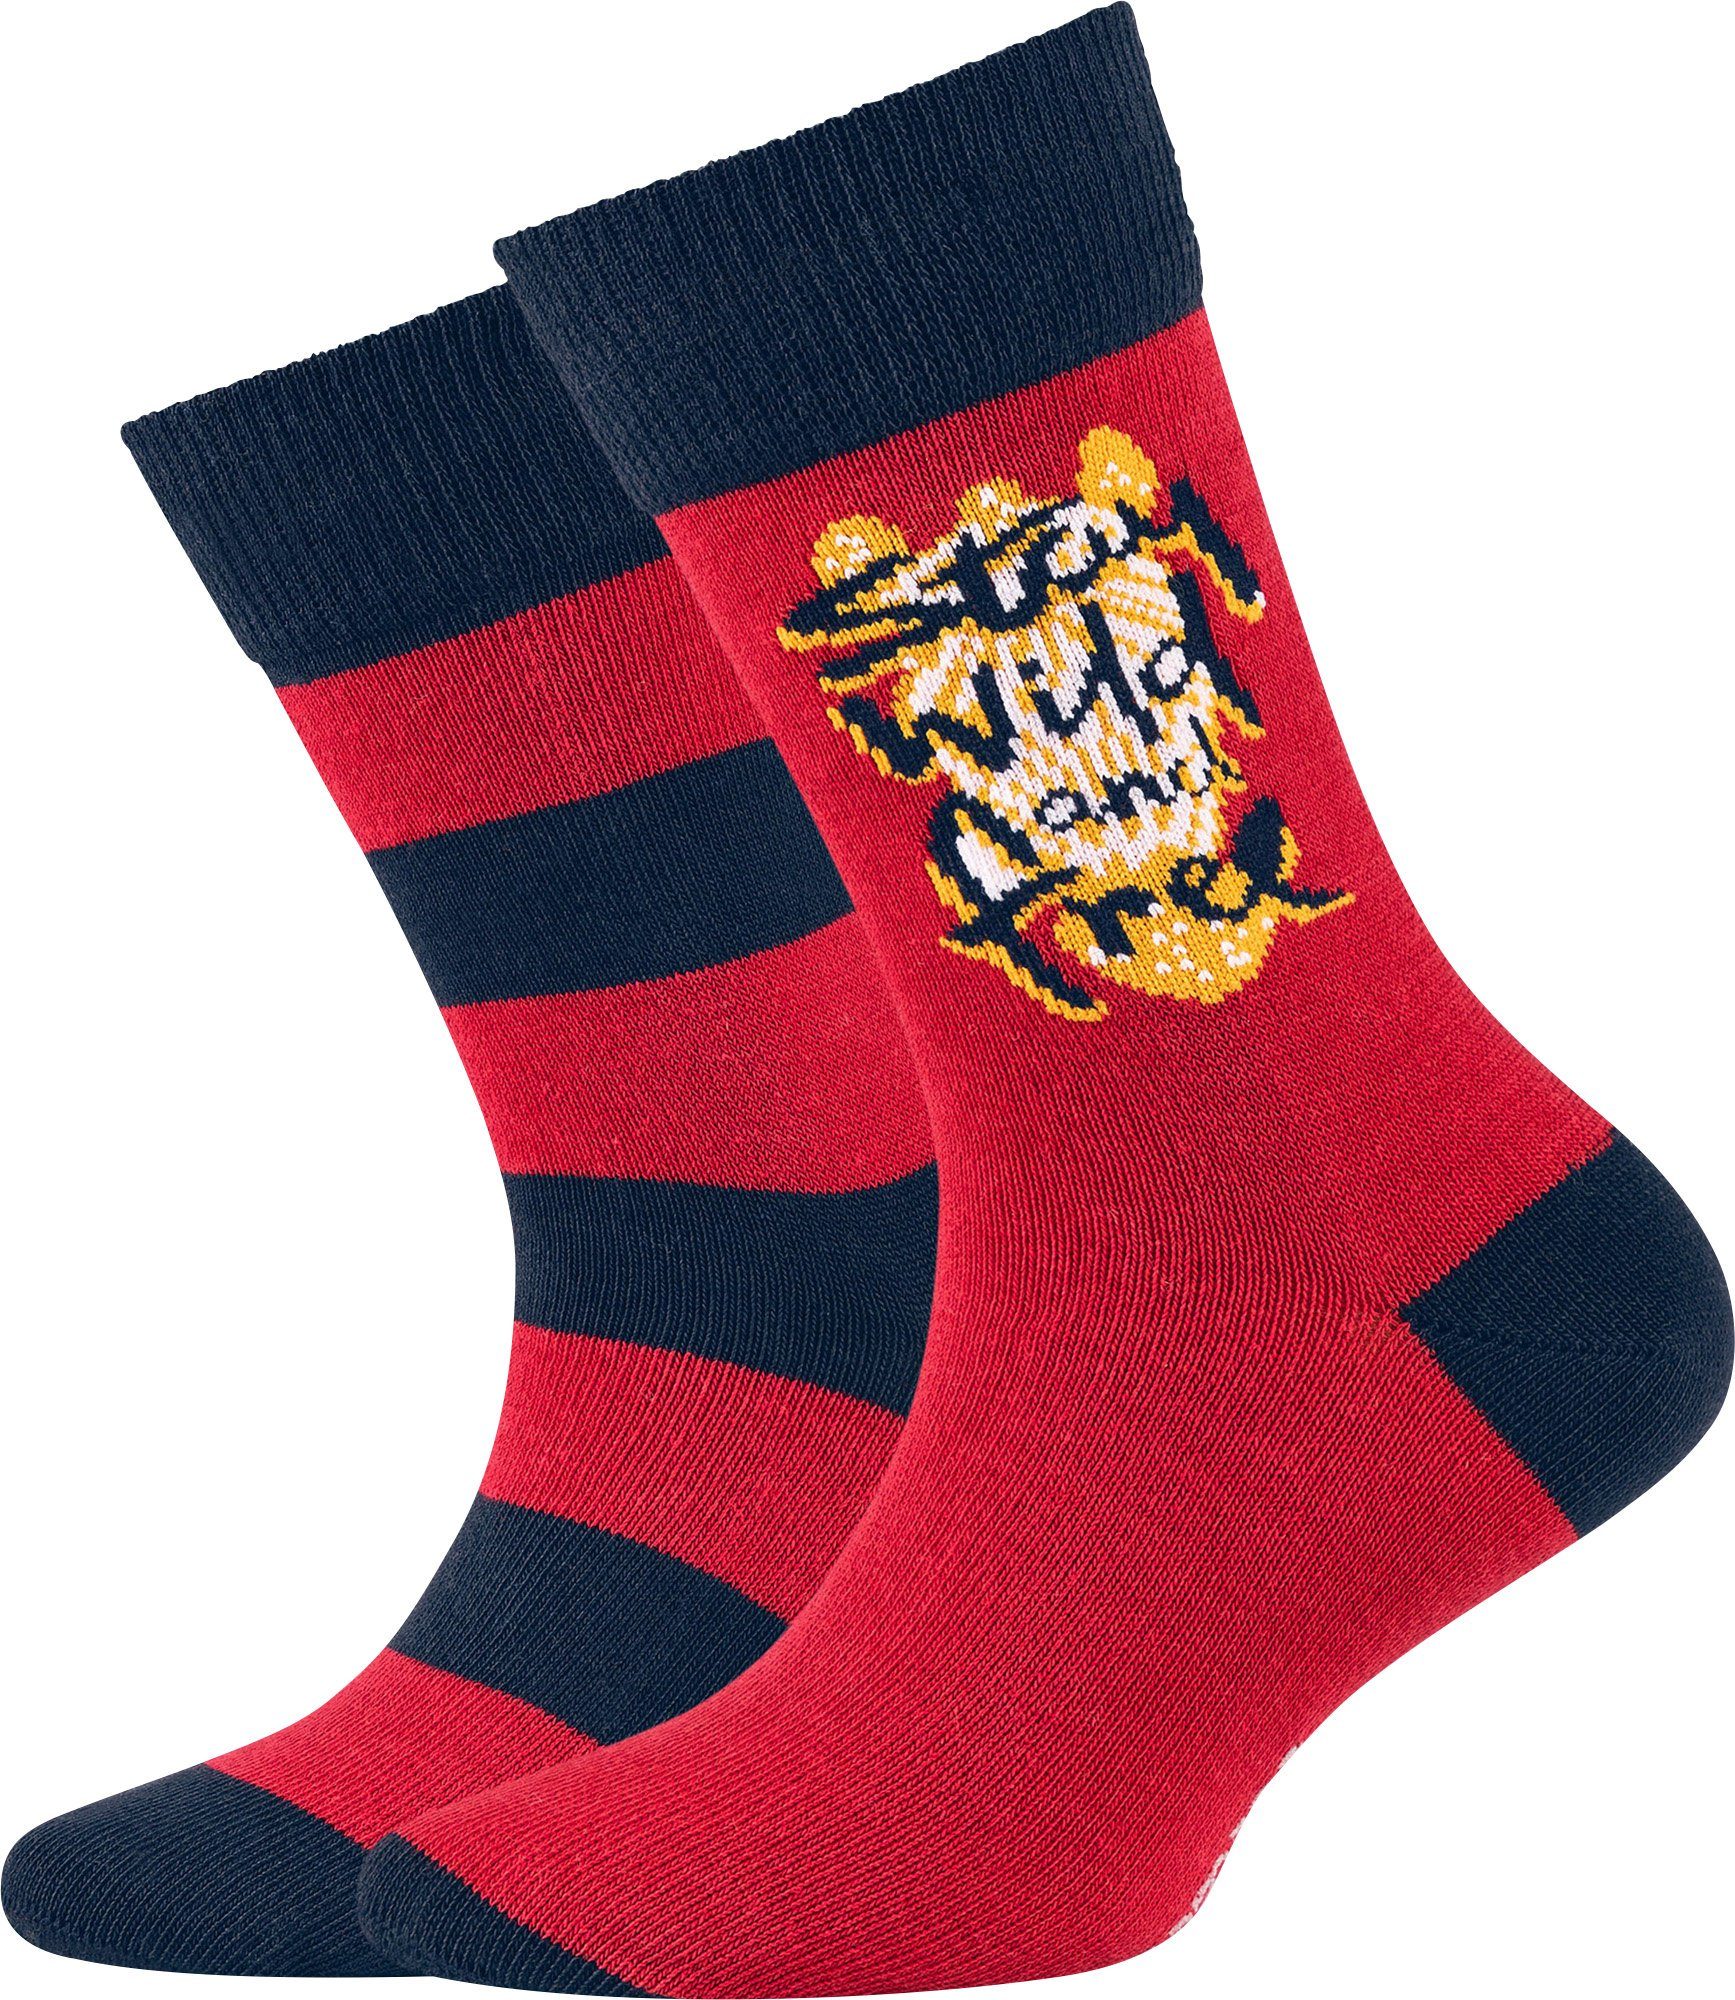 Camano Socken Kinder-Socken 2 Paar Streifen: 1 Paar